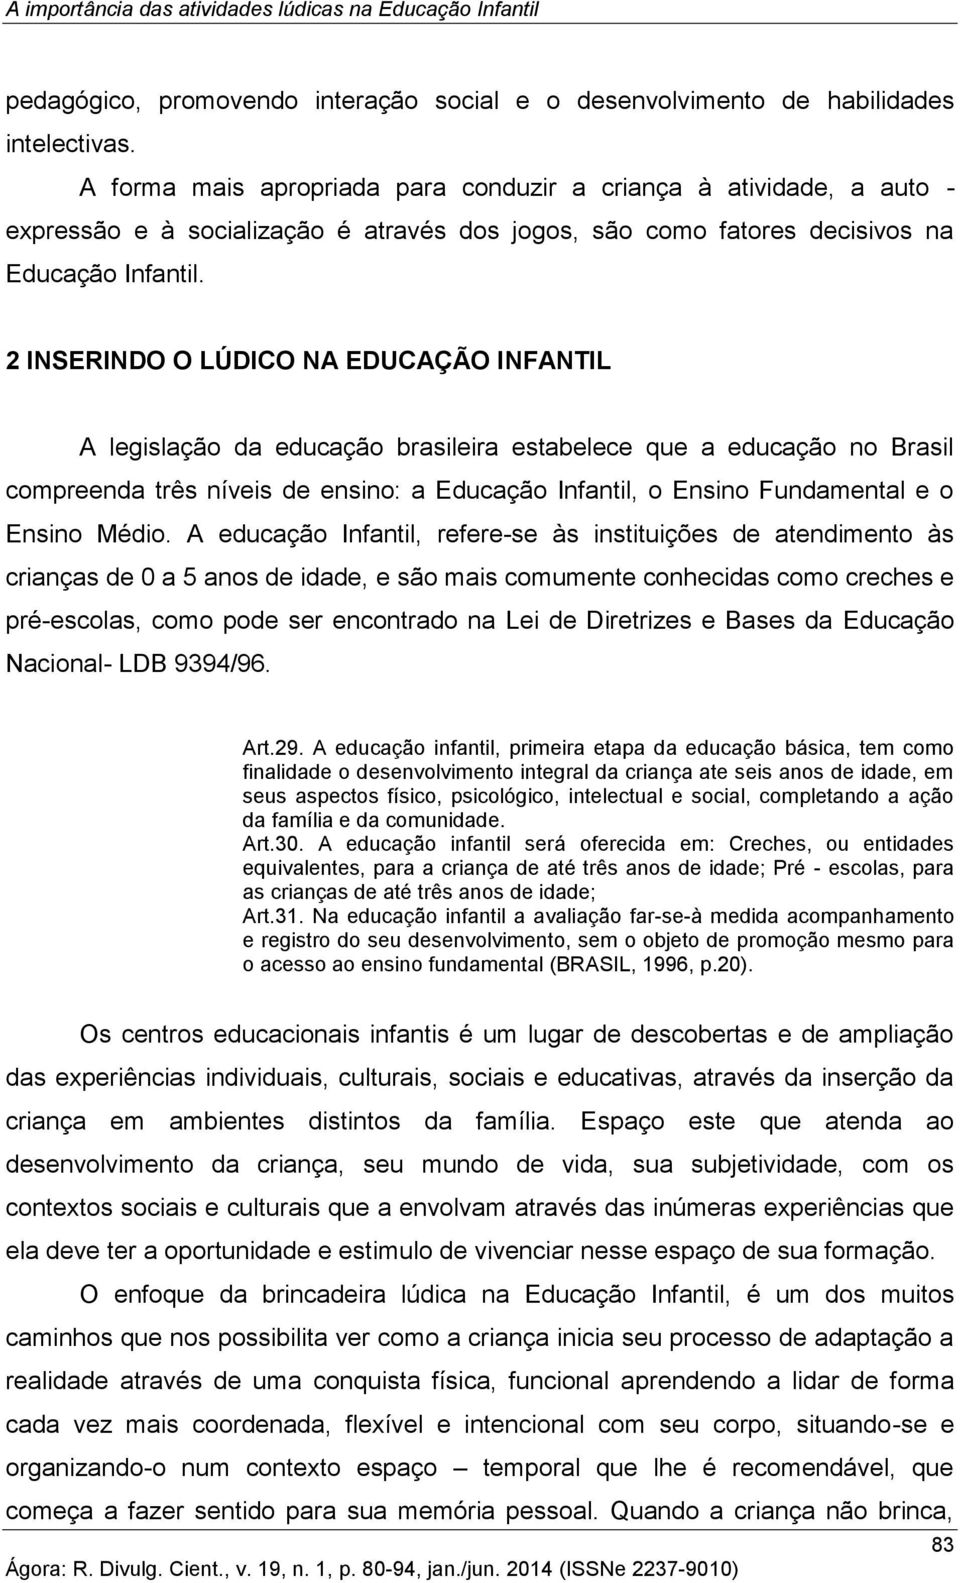 2 INSERINDO O LÚDICO NA EDUCAÇÃO INFANTIL A legislação da educação brasileira estabelece que a educação no Brasil compreenda três níveis de ensino: a Educação Infantil, o Ensino Fundamental e o